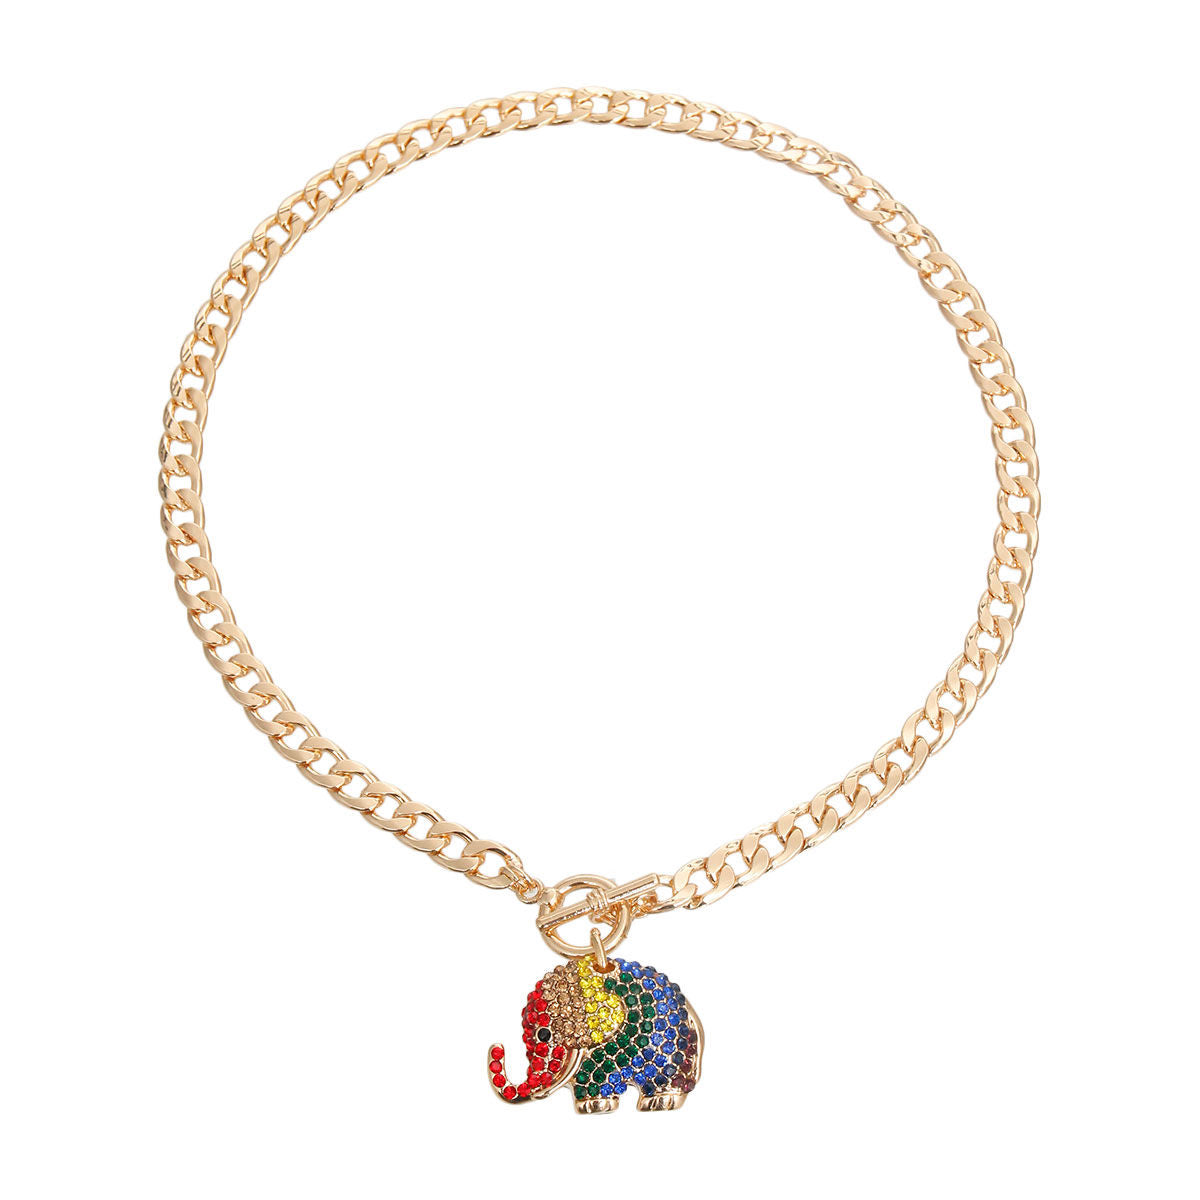 Rainbow Rhinestone Elephant Toggle Necklace